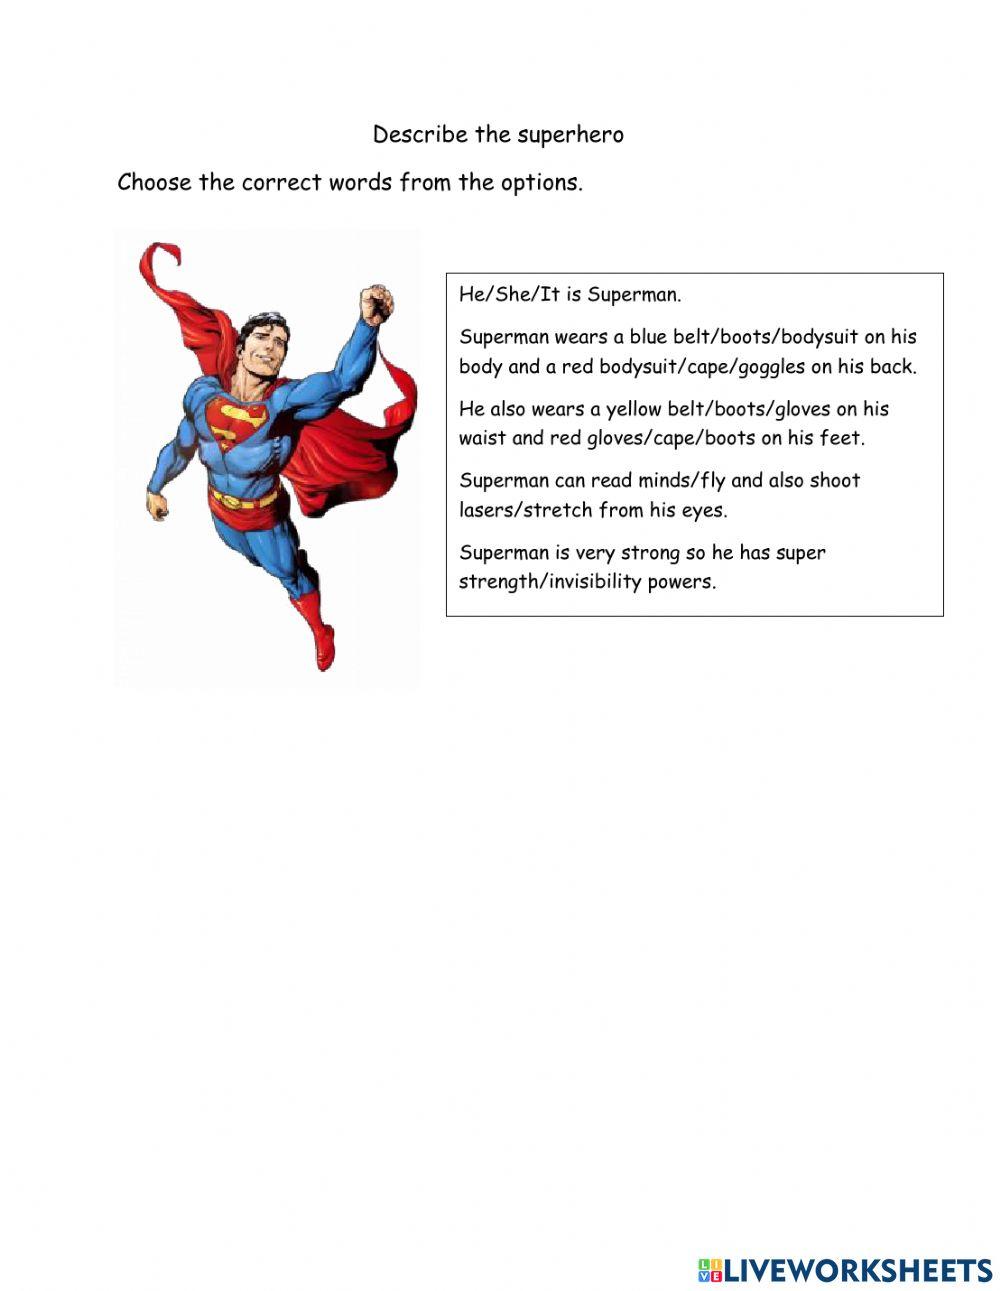 Superheroes sentence gap fill choose